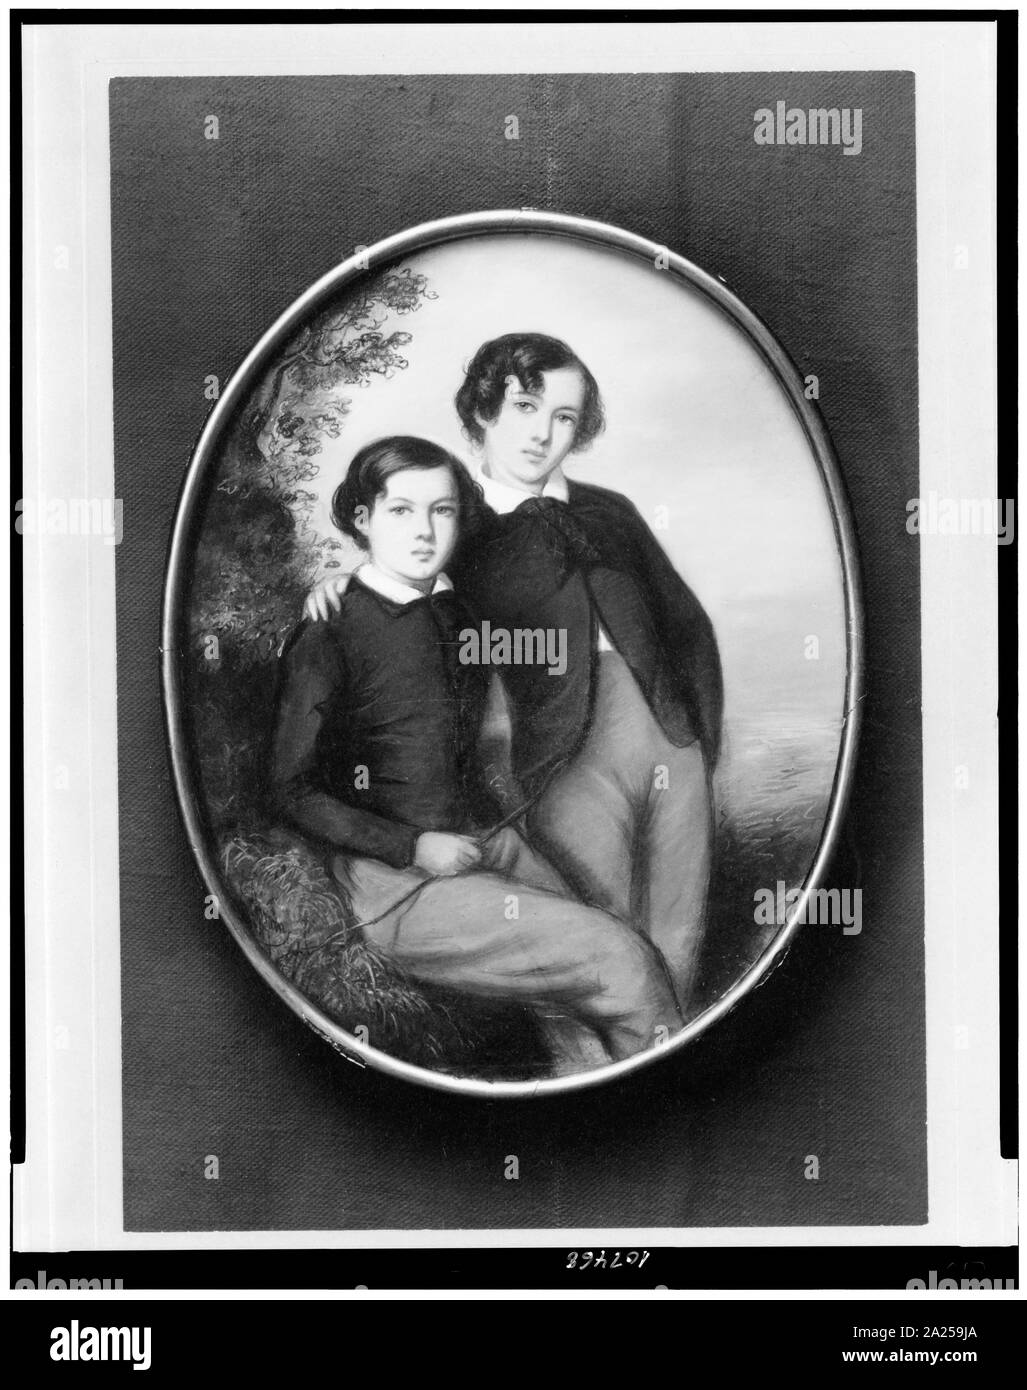 Fotografia della miniatura Di artista sconosciuto che mostra i due fratelli James McNeill Whistler, 15 anni, e William Whistler, 13 anni Foto Stock